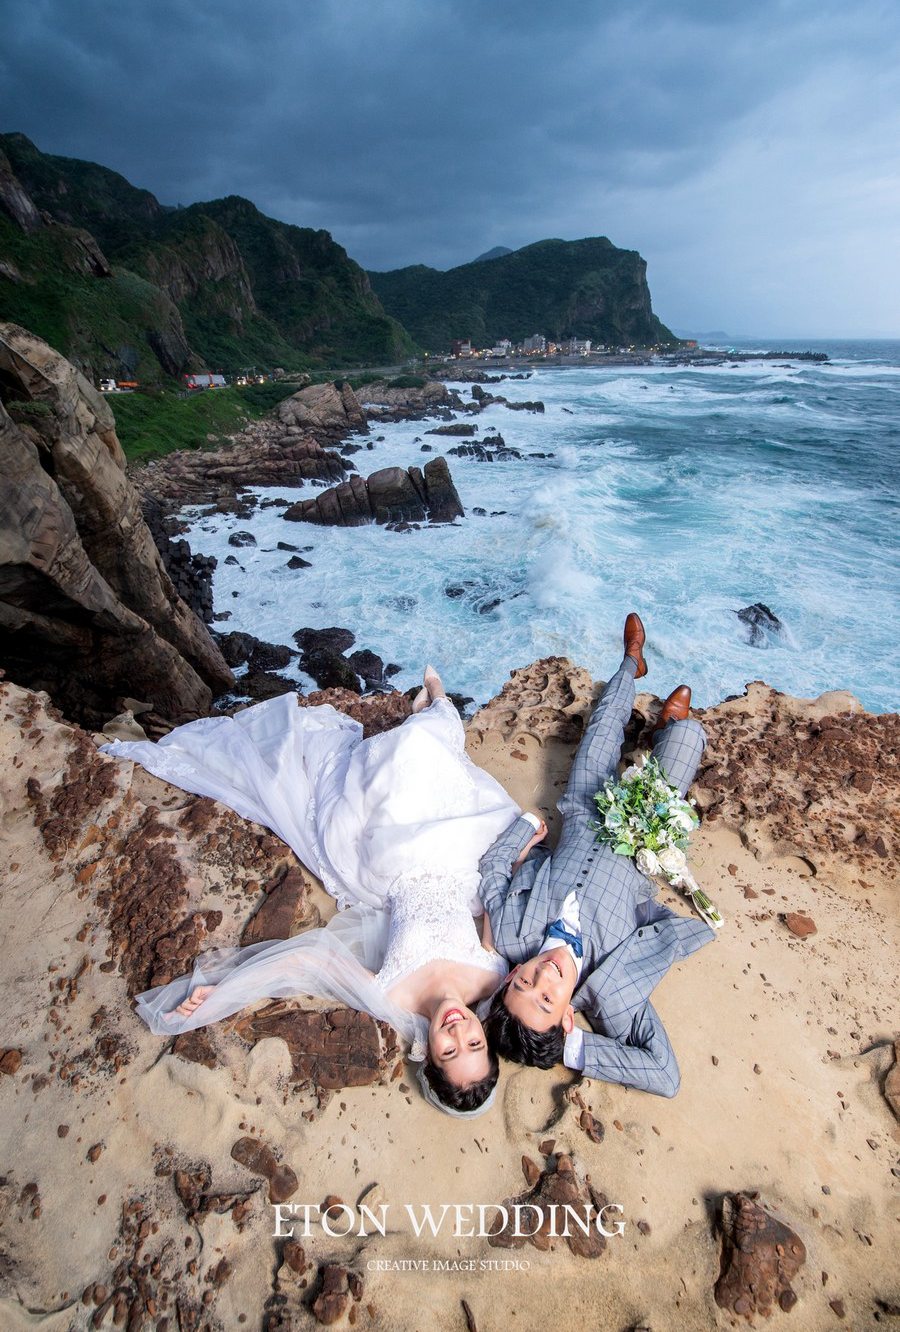 海邊婚紗照,海景婚紗攝影,風景婚紗照,沙灘海景婚紗照